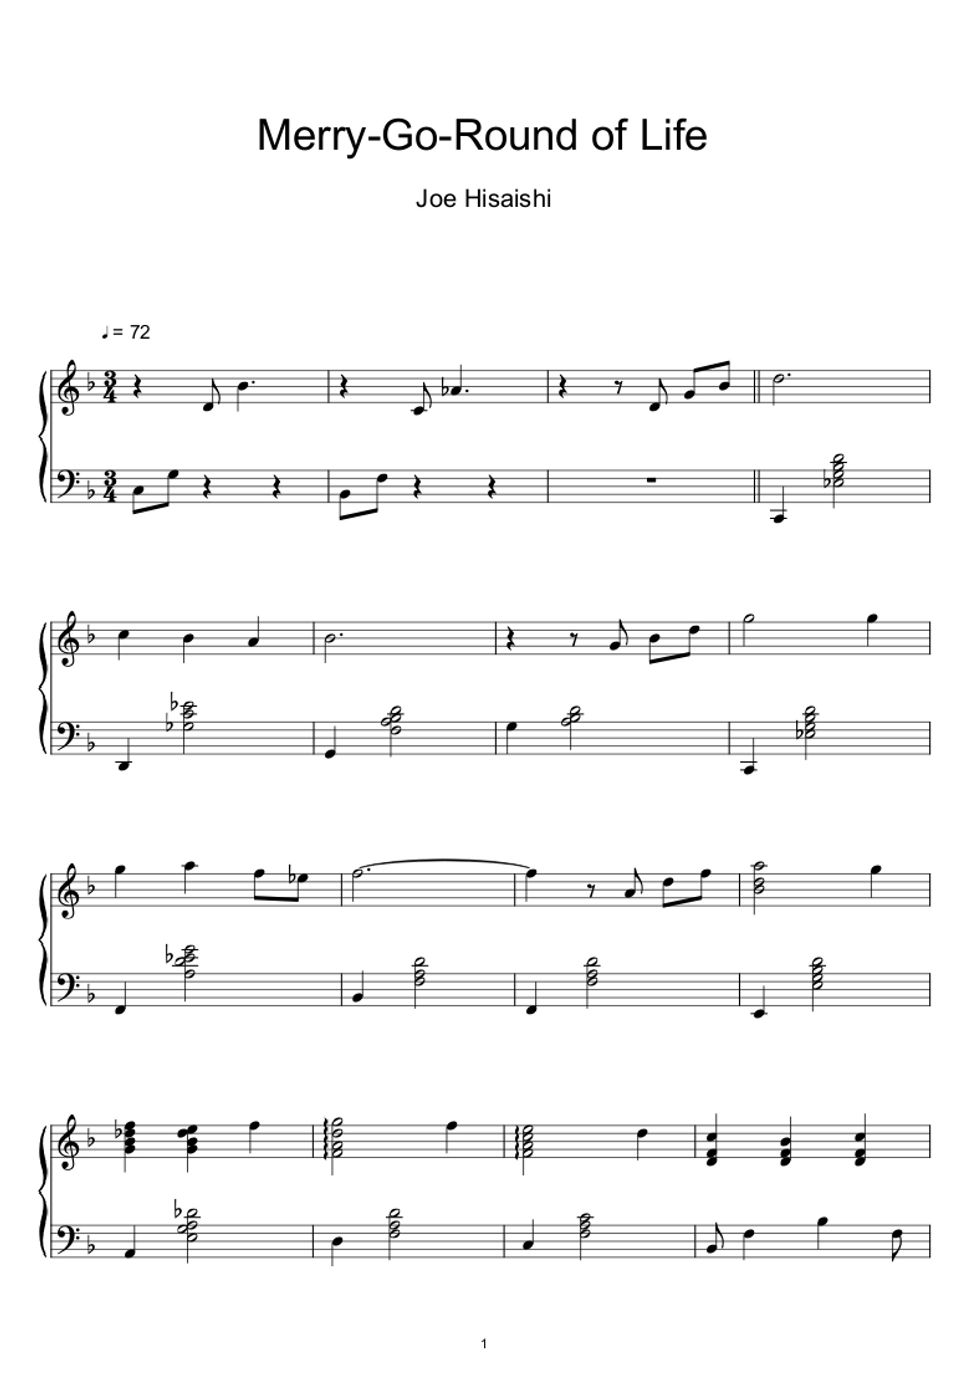 久石譲 (Joe Hisaishi) - Merry-Go-Round of Life (from Howl's Moving Castle) (Sheet Music, MIDI,) by sayu